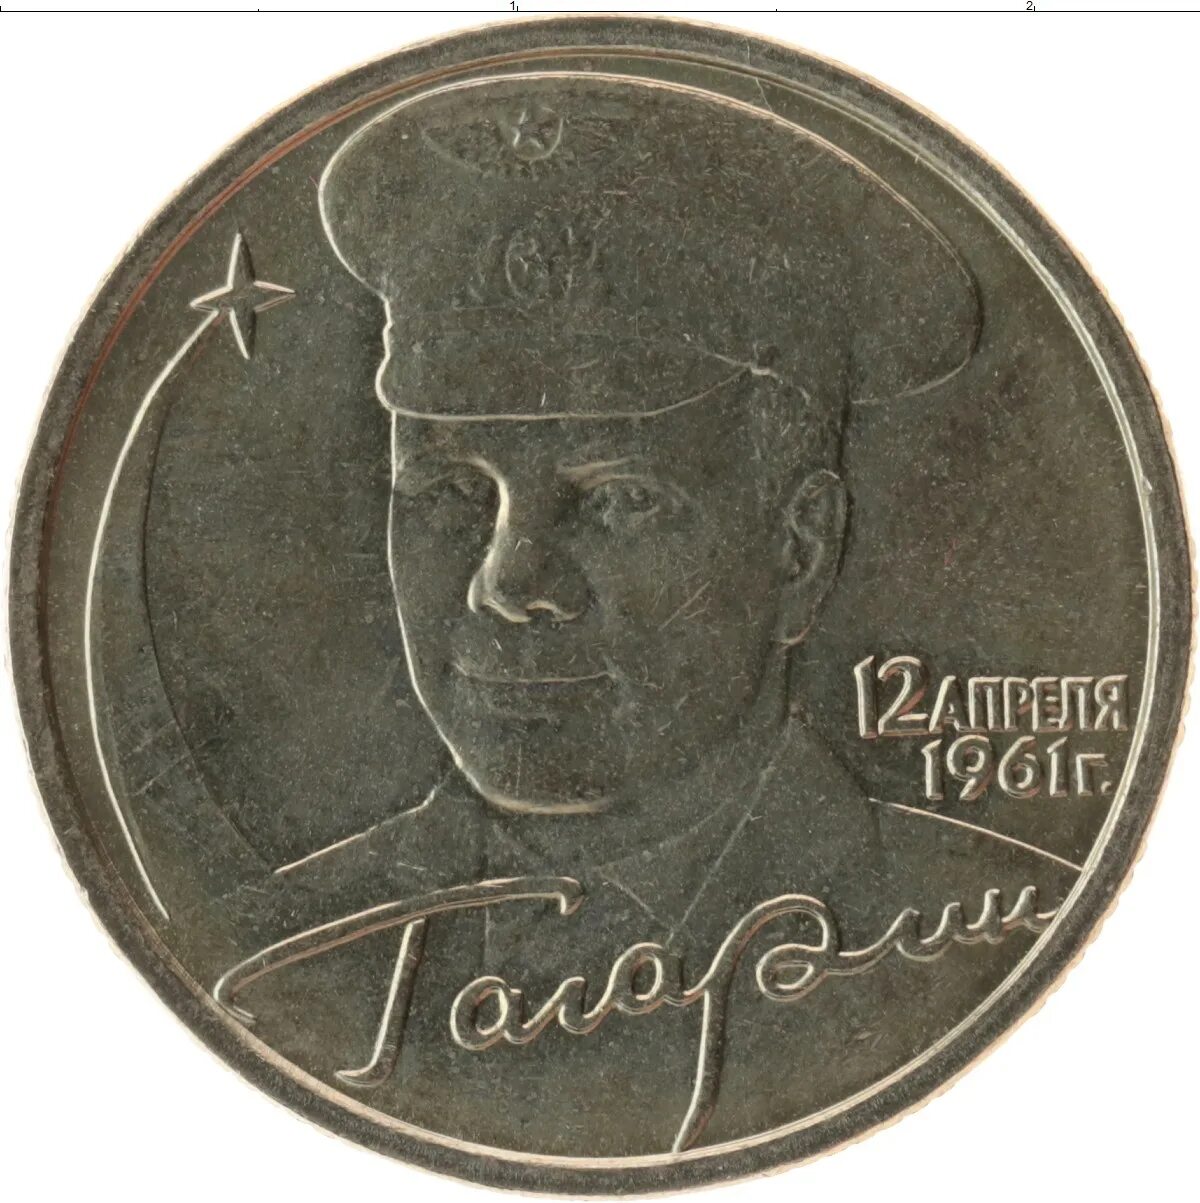 2 рубля 2001 года с гагариным. Монета 2 рубля Гагарин. 2 Рубля 2001 Гагарин. 2 Рубля 2001 Гагарин ММД. Монета 2 рубля Гагарина.